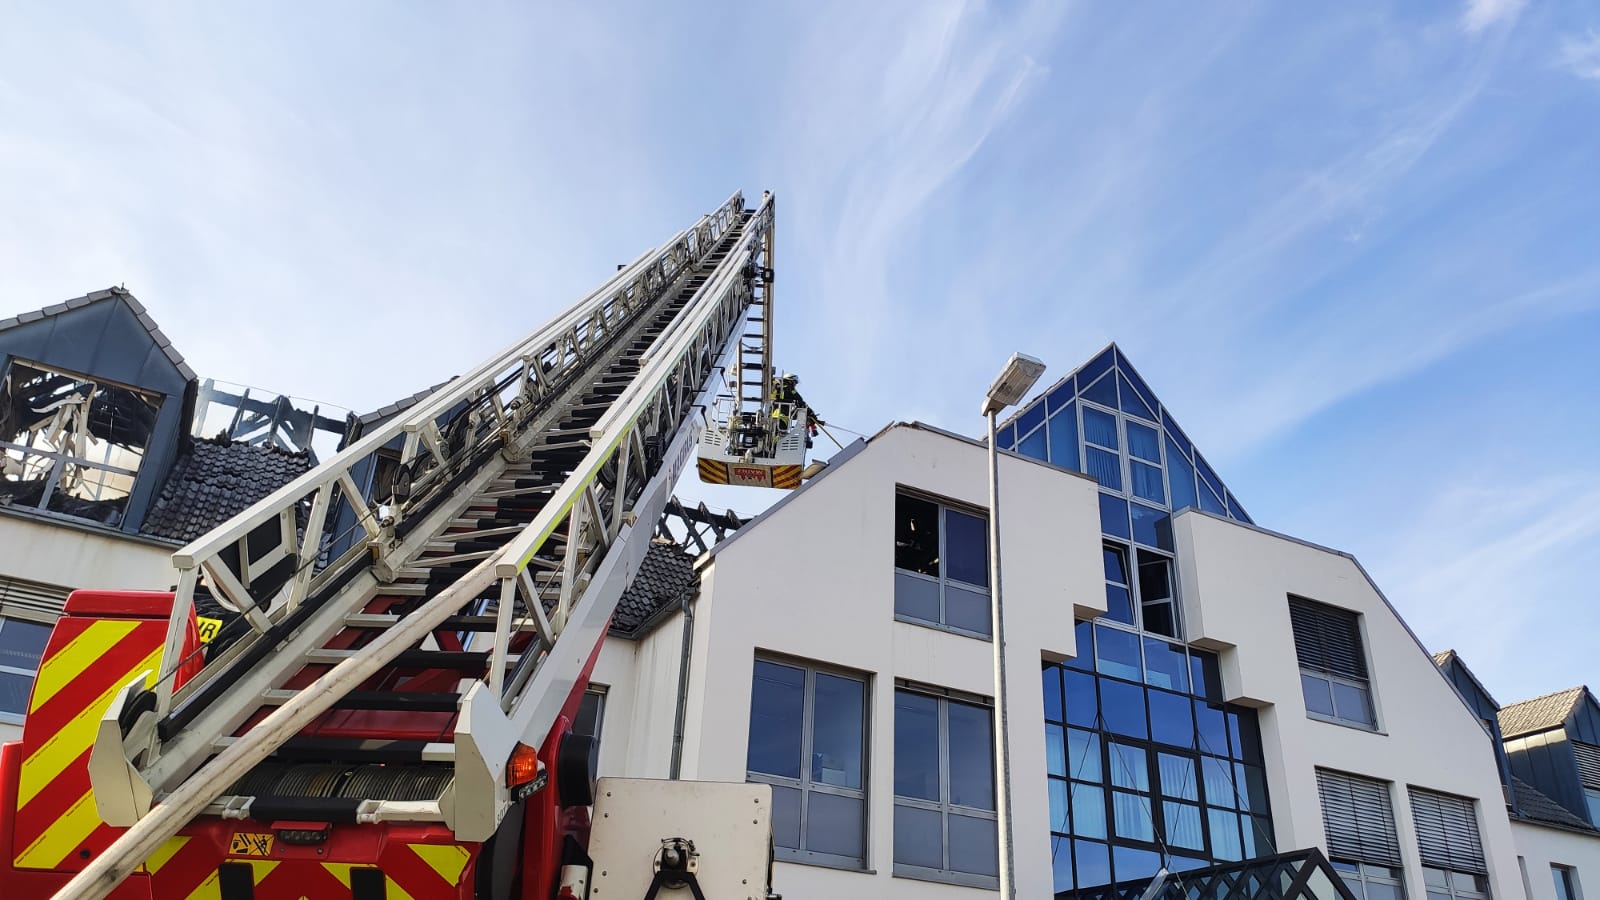 Großeinsatz der Feuerwehr Mainz vom 2 Juni 2020 in Gonsenheim